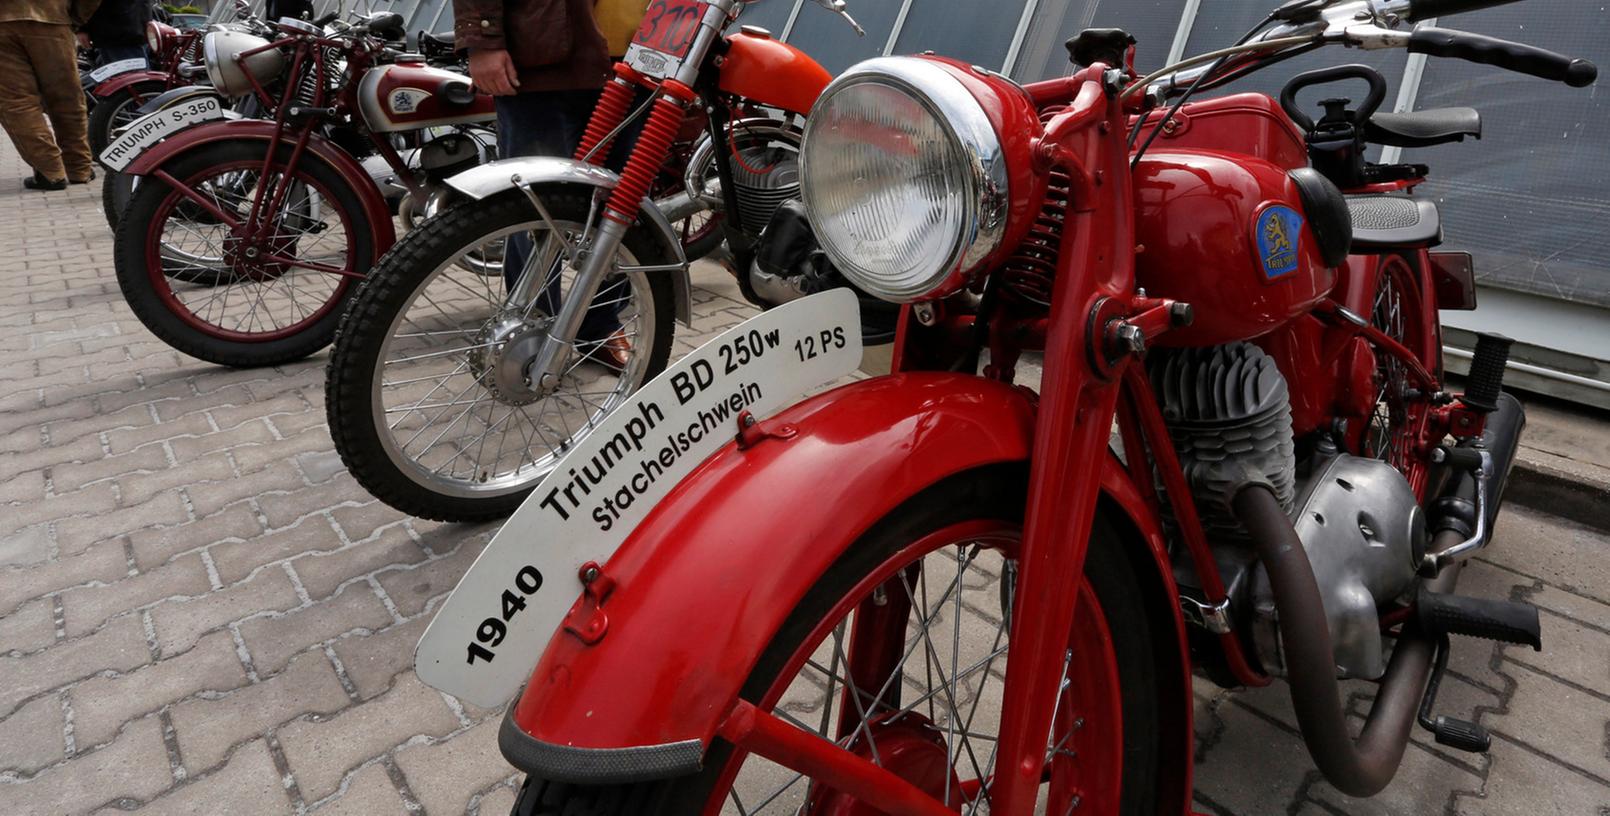 110 Jahre ist es her, dass die Firma Triumph ihre ersten Motorräder in Nürnberg baute. Zum Jubiläum lud die "Triumph Werke Nürnberg Zweirad-Interessengemeinschaft" zum nostalgischen Rendezvous ins Museum Industriekultur.